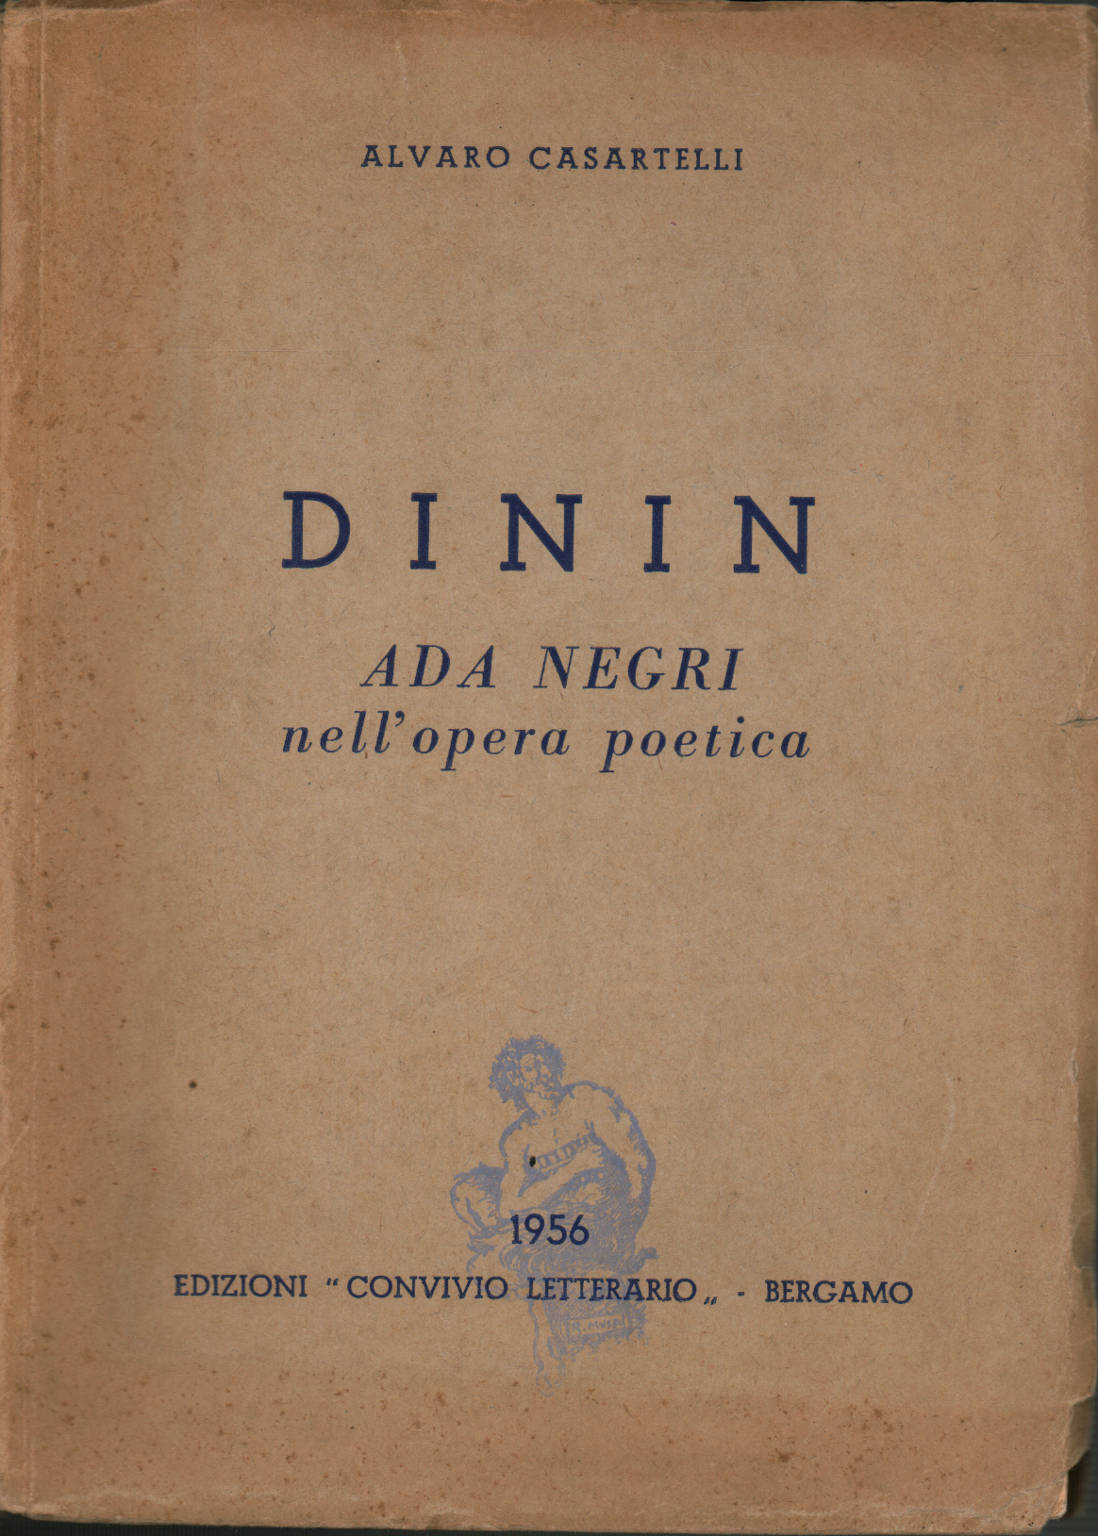 Dinin. Ada Negri in ihrem poetischen Werk, s.a.